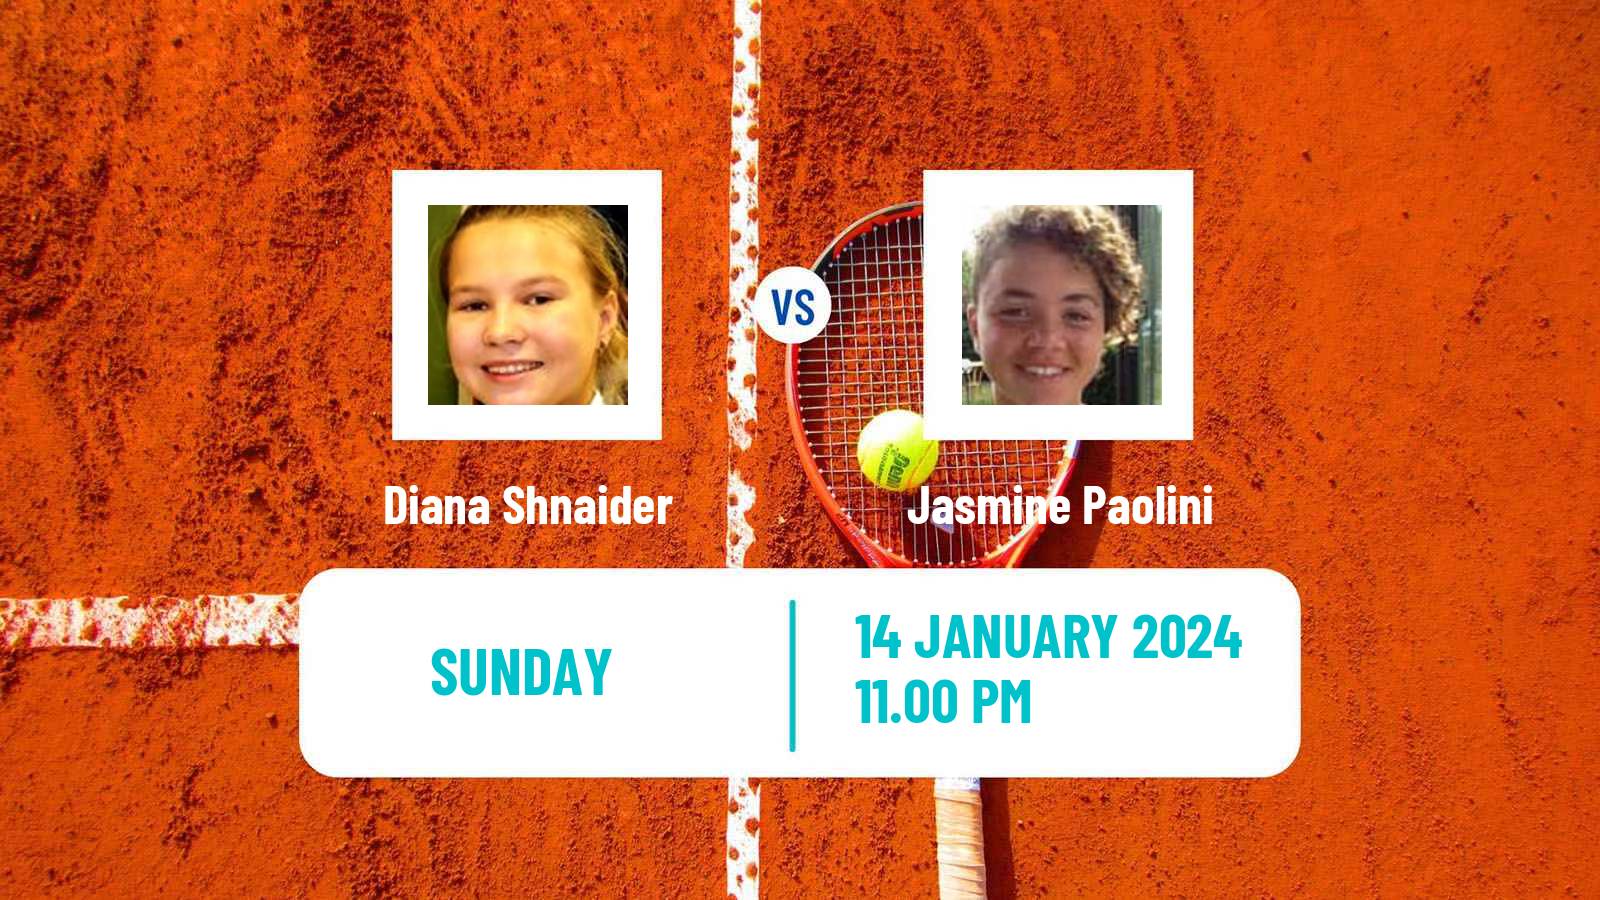 Tennis WTA Australian Open Diana Shnaider - Jasmine Paolini